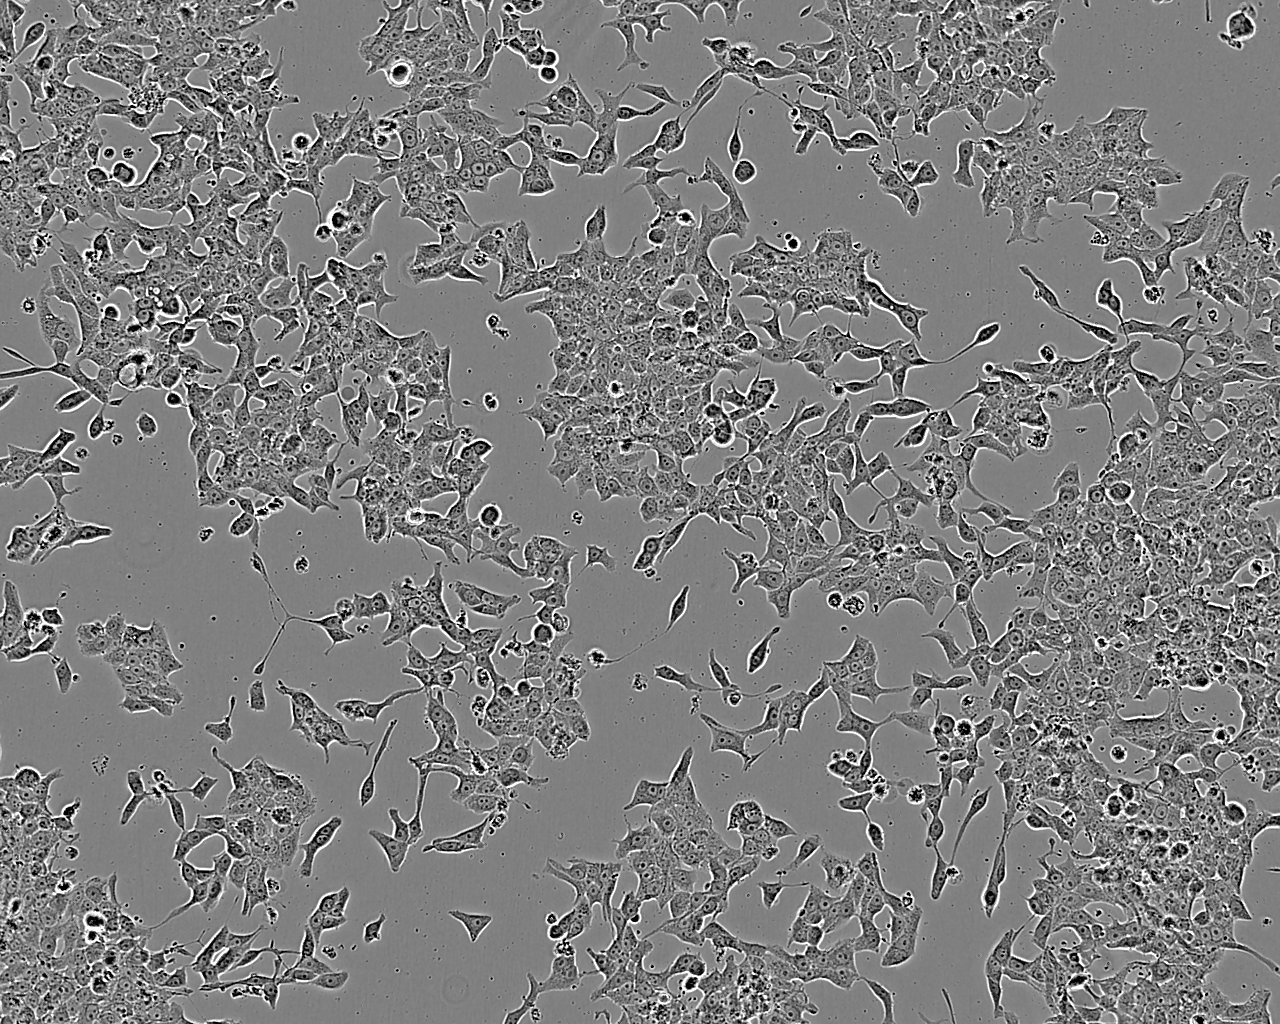 EO771 Cell:小鼠髓样乳腺癌细胞系,EO771 Cell